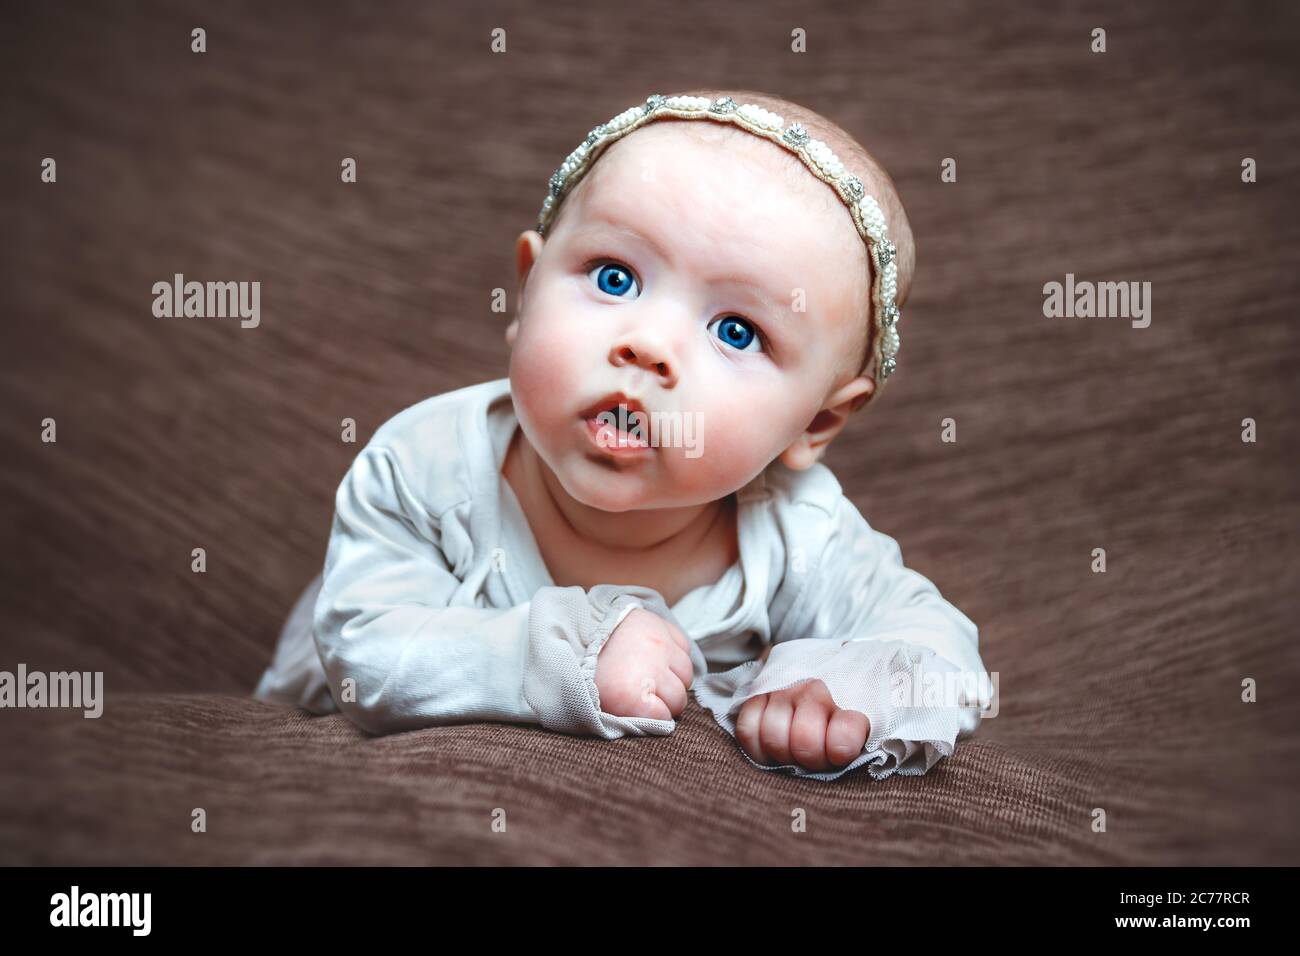 Baby girl closeup facial expression Stock Photo